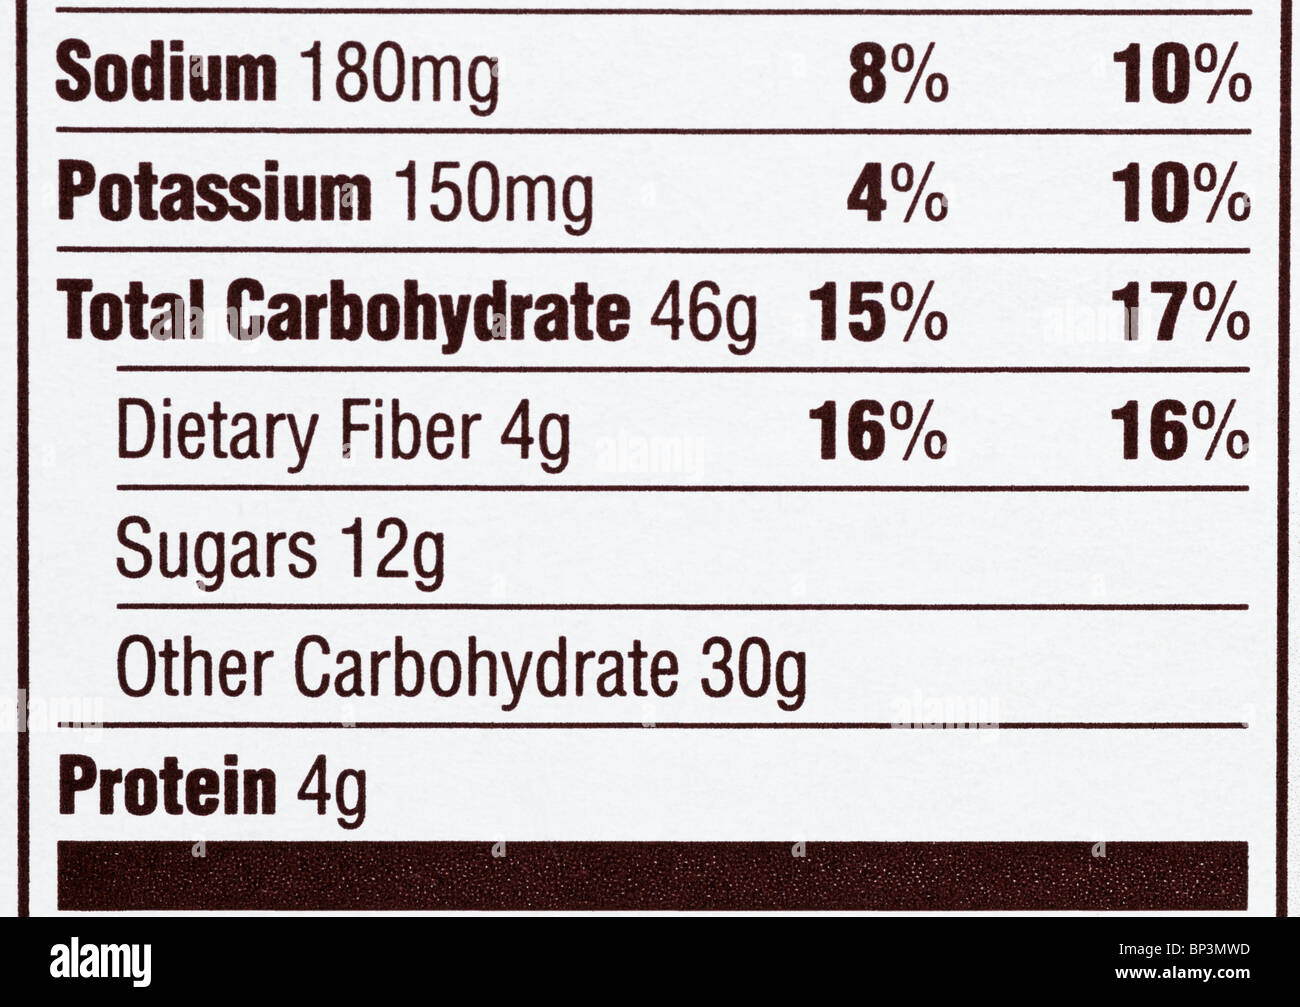 L'etichetta nutrizionale da una scatola di cereali sottolineando che il prodotto è elevato in zuccheri e di altri carboidrati. Foto Stock